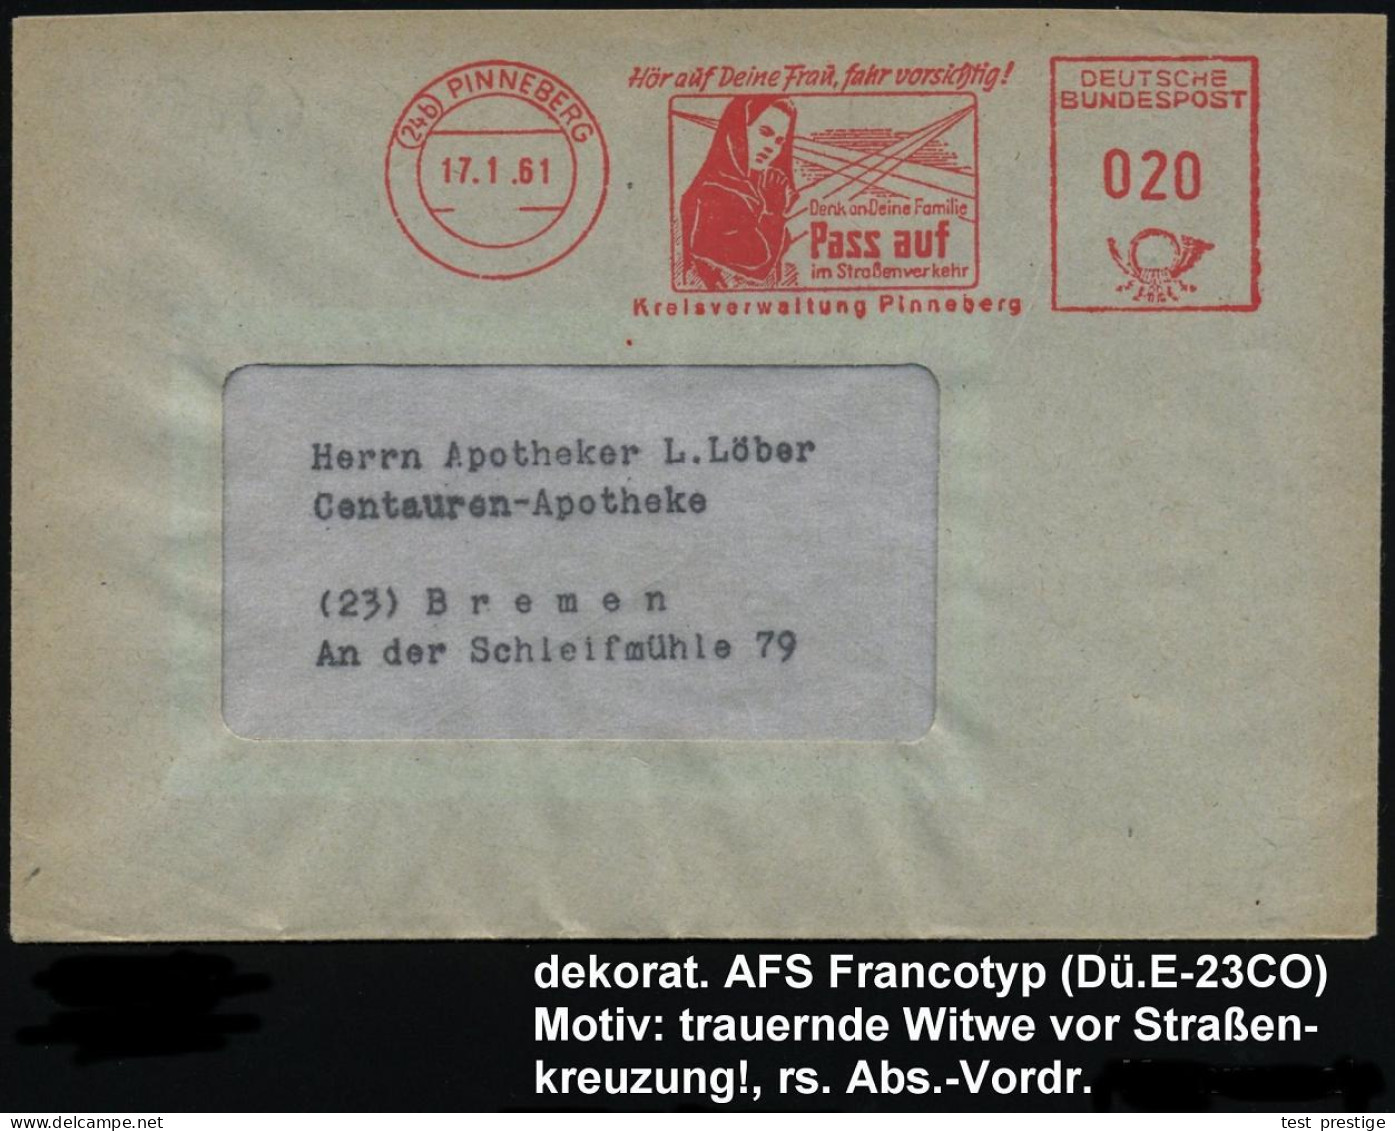 (24b) PINNEBERG/ Hör Auf Deine Frau,fahr Vorsichtig!../ Pass Auf/ Im Strassenverkehr/ Kreisverwaltung 1961 (17.1.) Selte - Accidents & Sécurité Routière